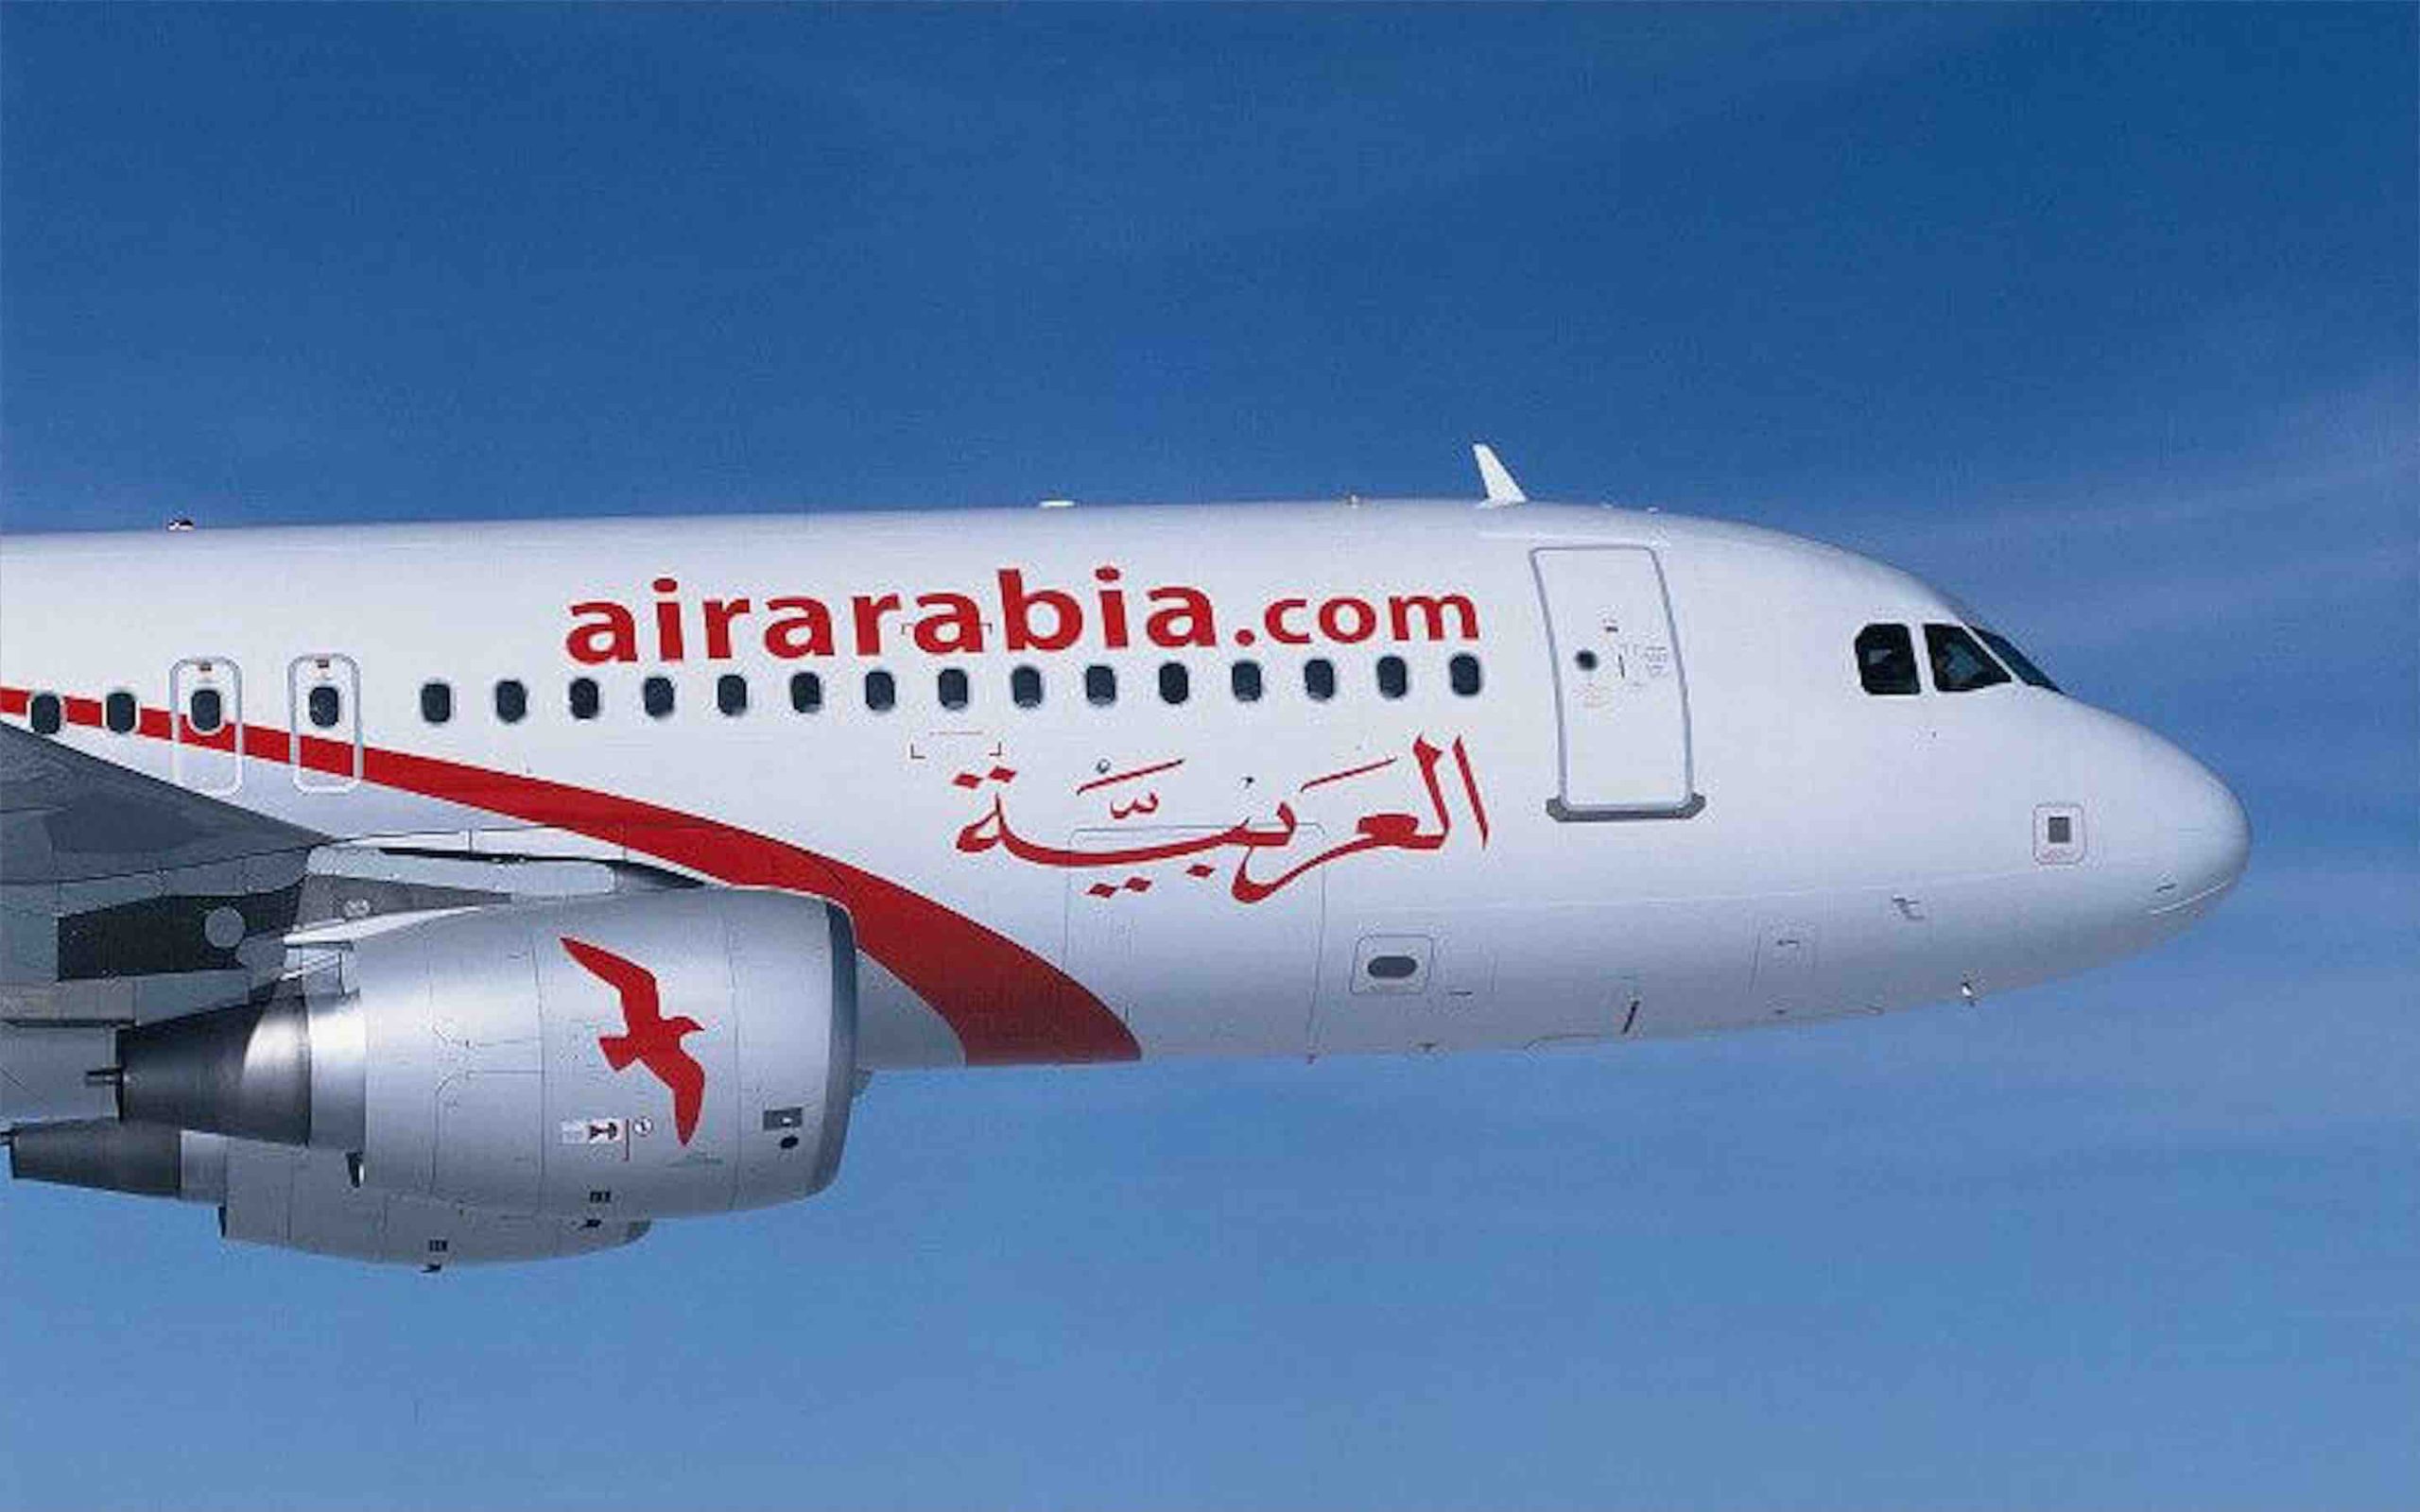 Air arabia сайт на русском. Air Arabia a320. Аэробус а320 Air Arabia. G9 956 Air Arabia. G9956 Air Arabia.